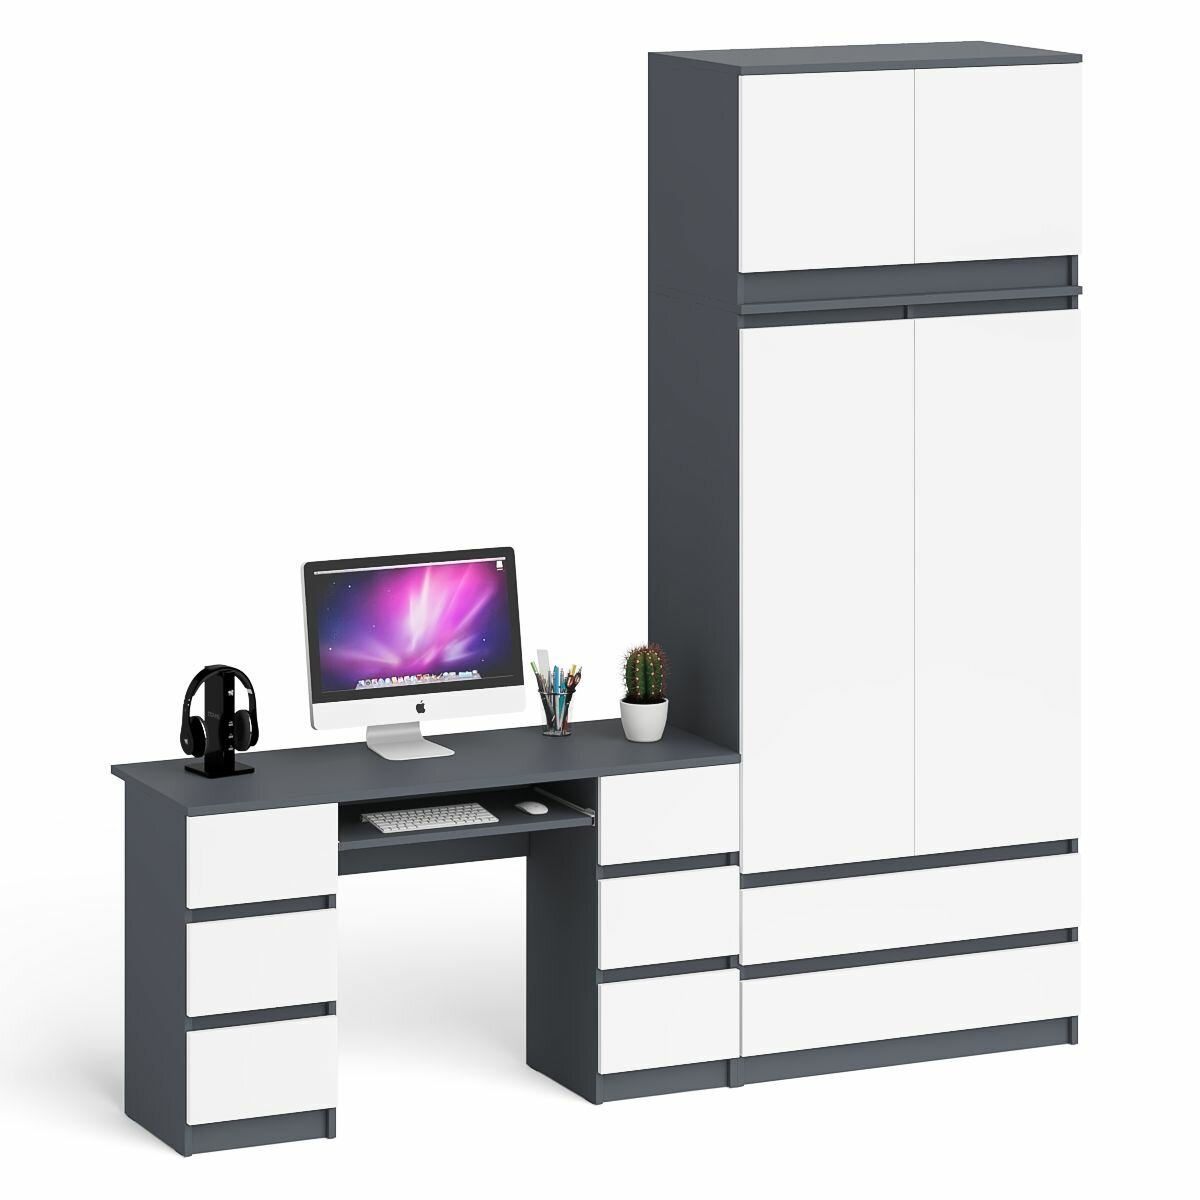 Стол 2-х тумбовый компьютерный СВК Мори со шкафом и антресолью цвет графит/белый, 225,8х50,4х234,2 см.